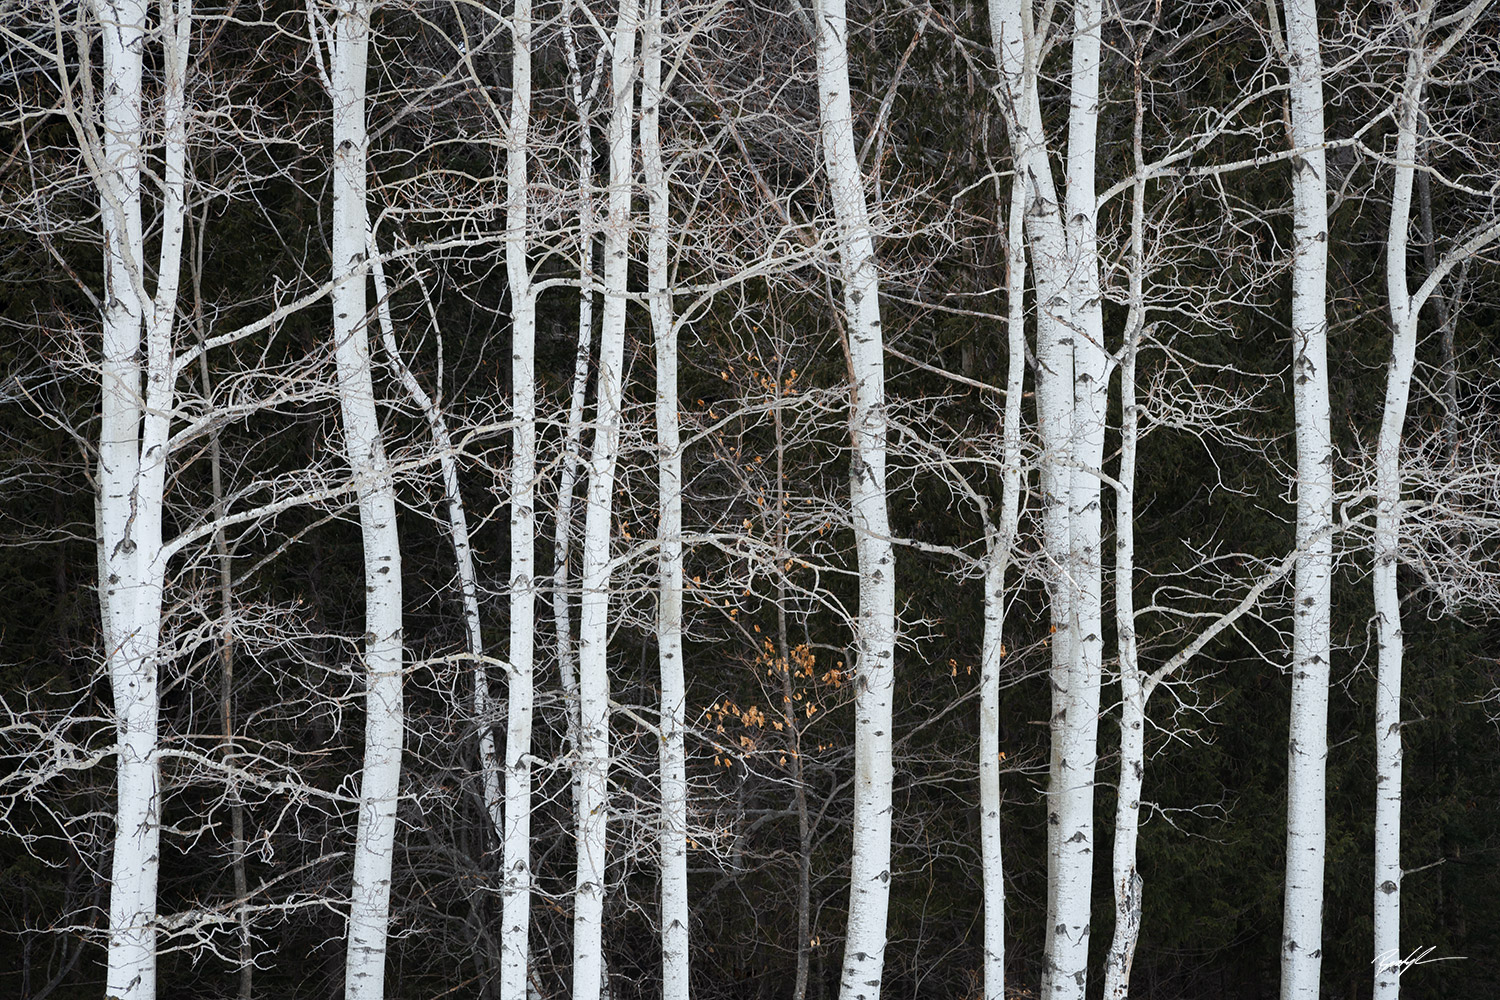 Paper Birch Trees Door County Wisconsin